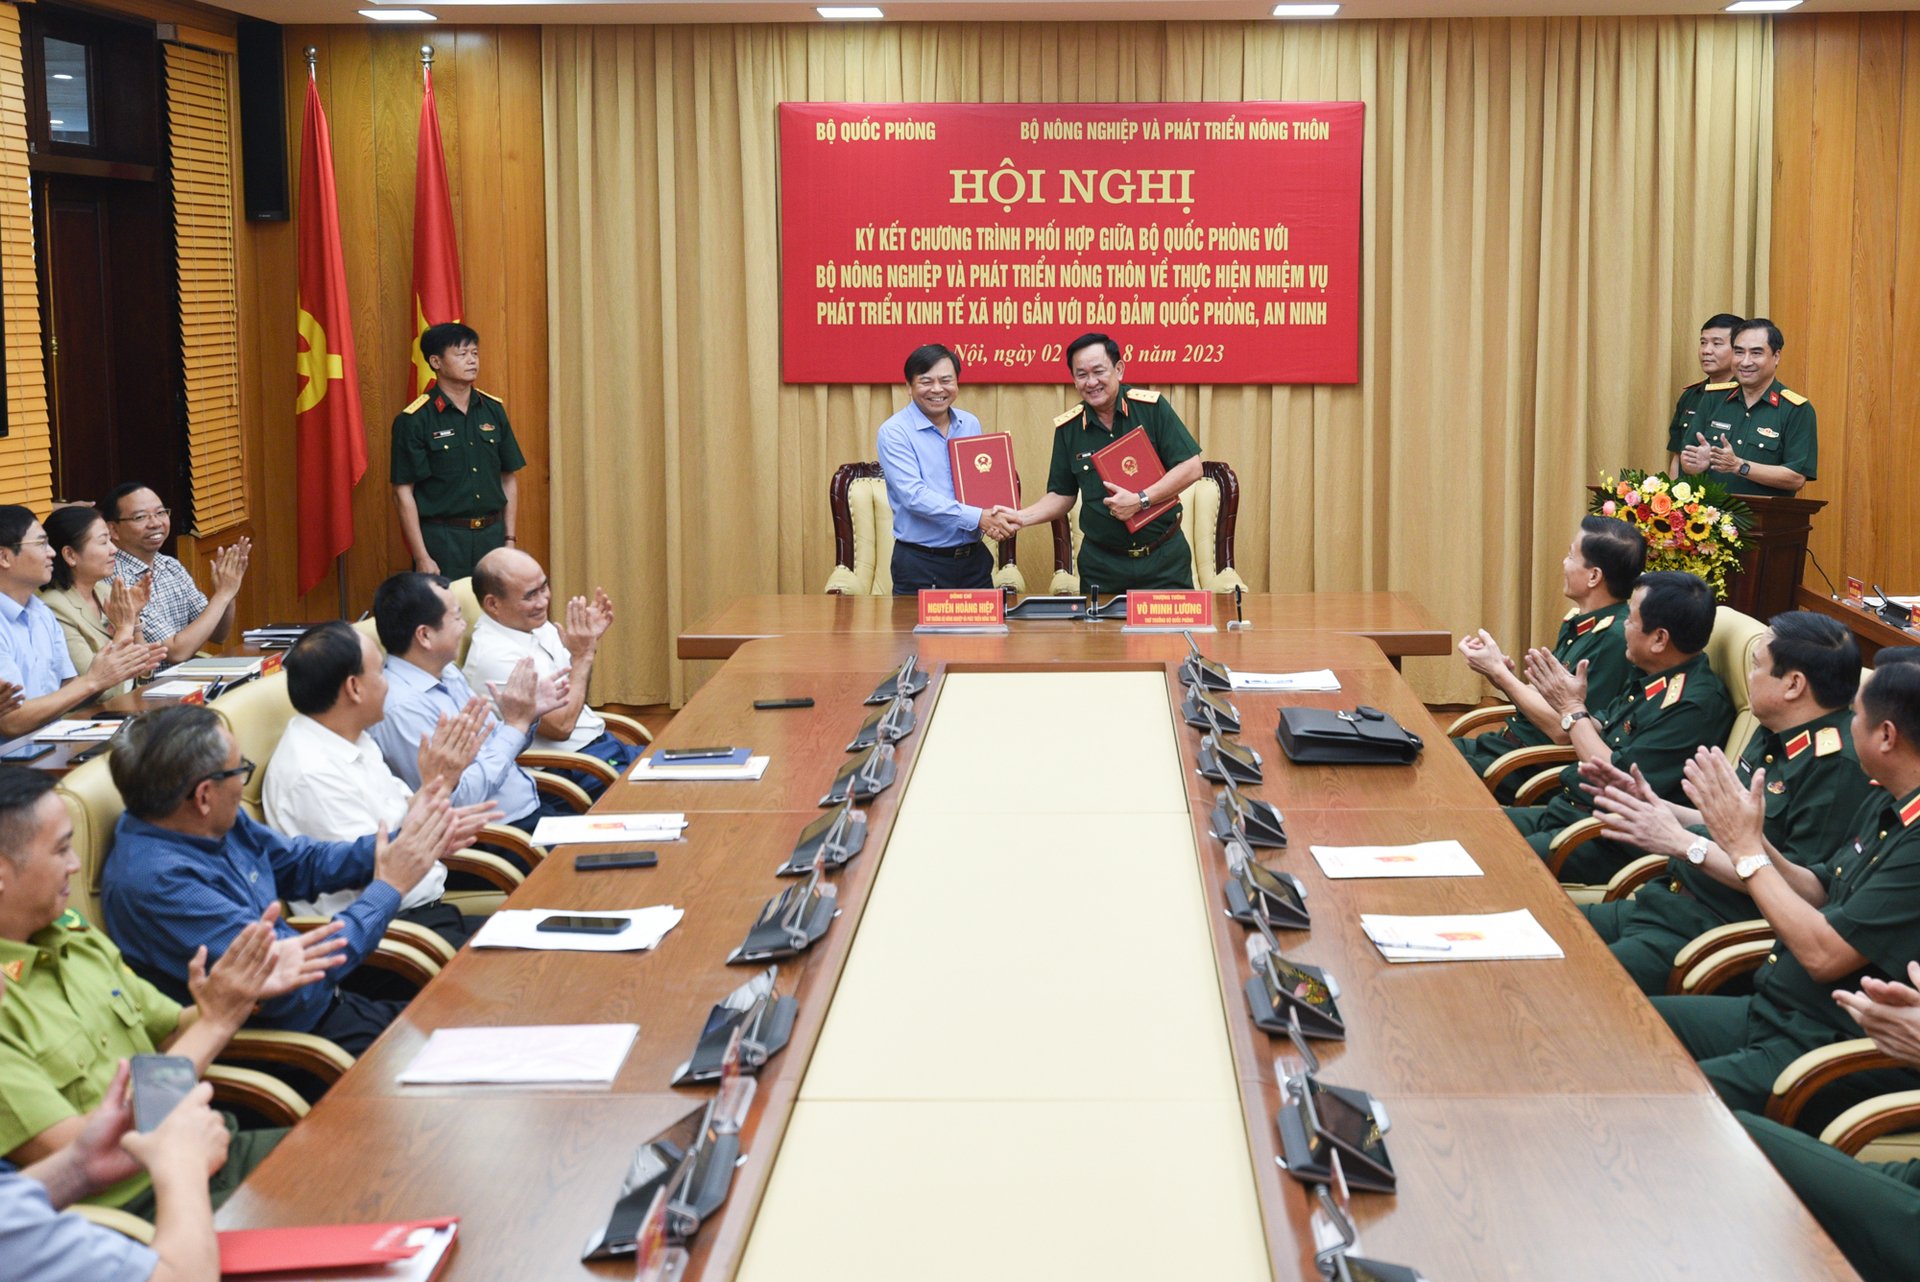 Thứ trưởng Bộ NN-PTNT Nguyễn Hoàng Hiệp và Thứ trưởng Bộ Quốc phòng, Thượng tướng Võ Minh Lương ký chương trình phối hợp phát triển kinh tế xã hội gắn với bảo vệ quốc phòng, an ninh. Ảnh: Tùng Đinh.